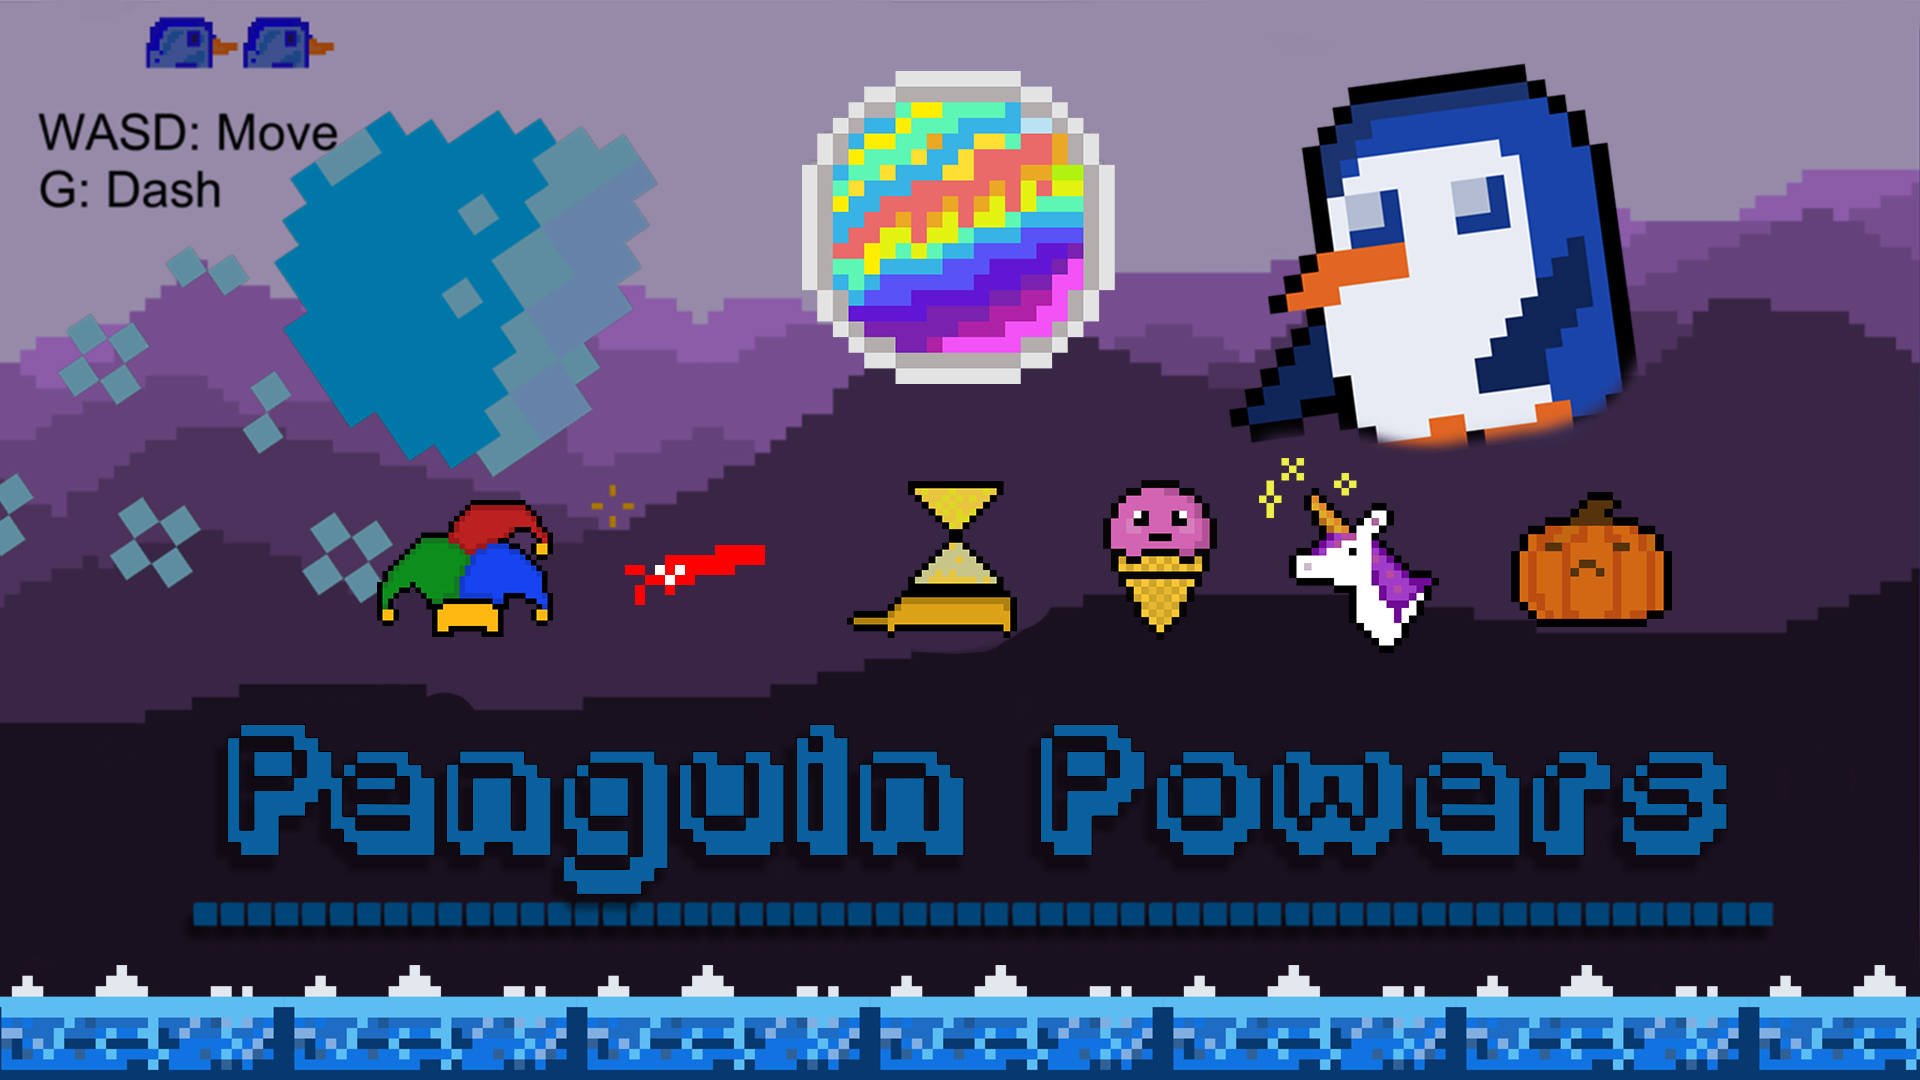 Penguin Powers